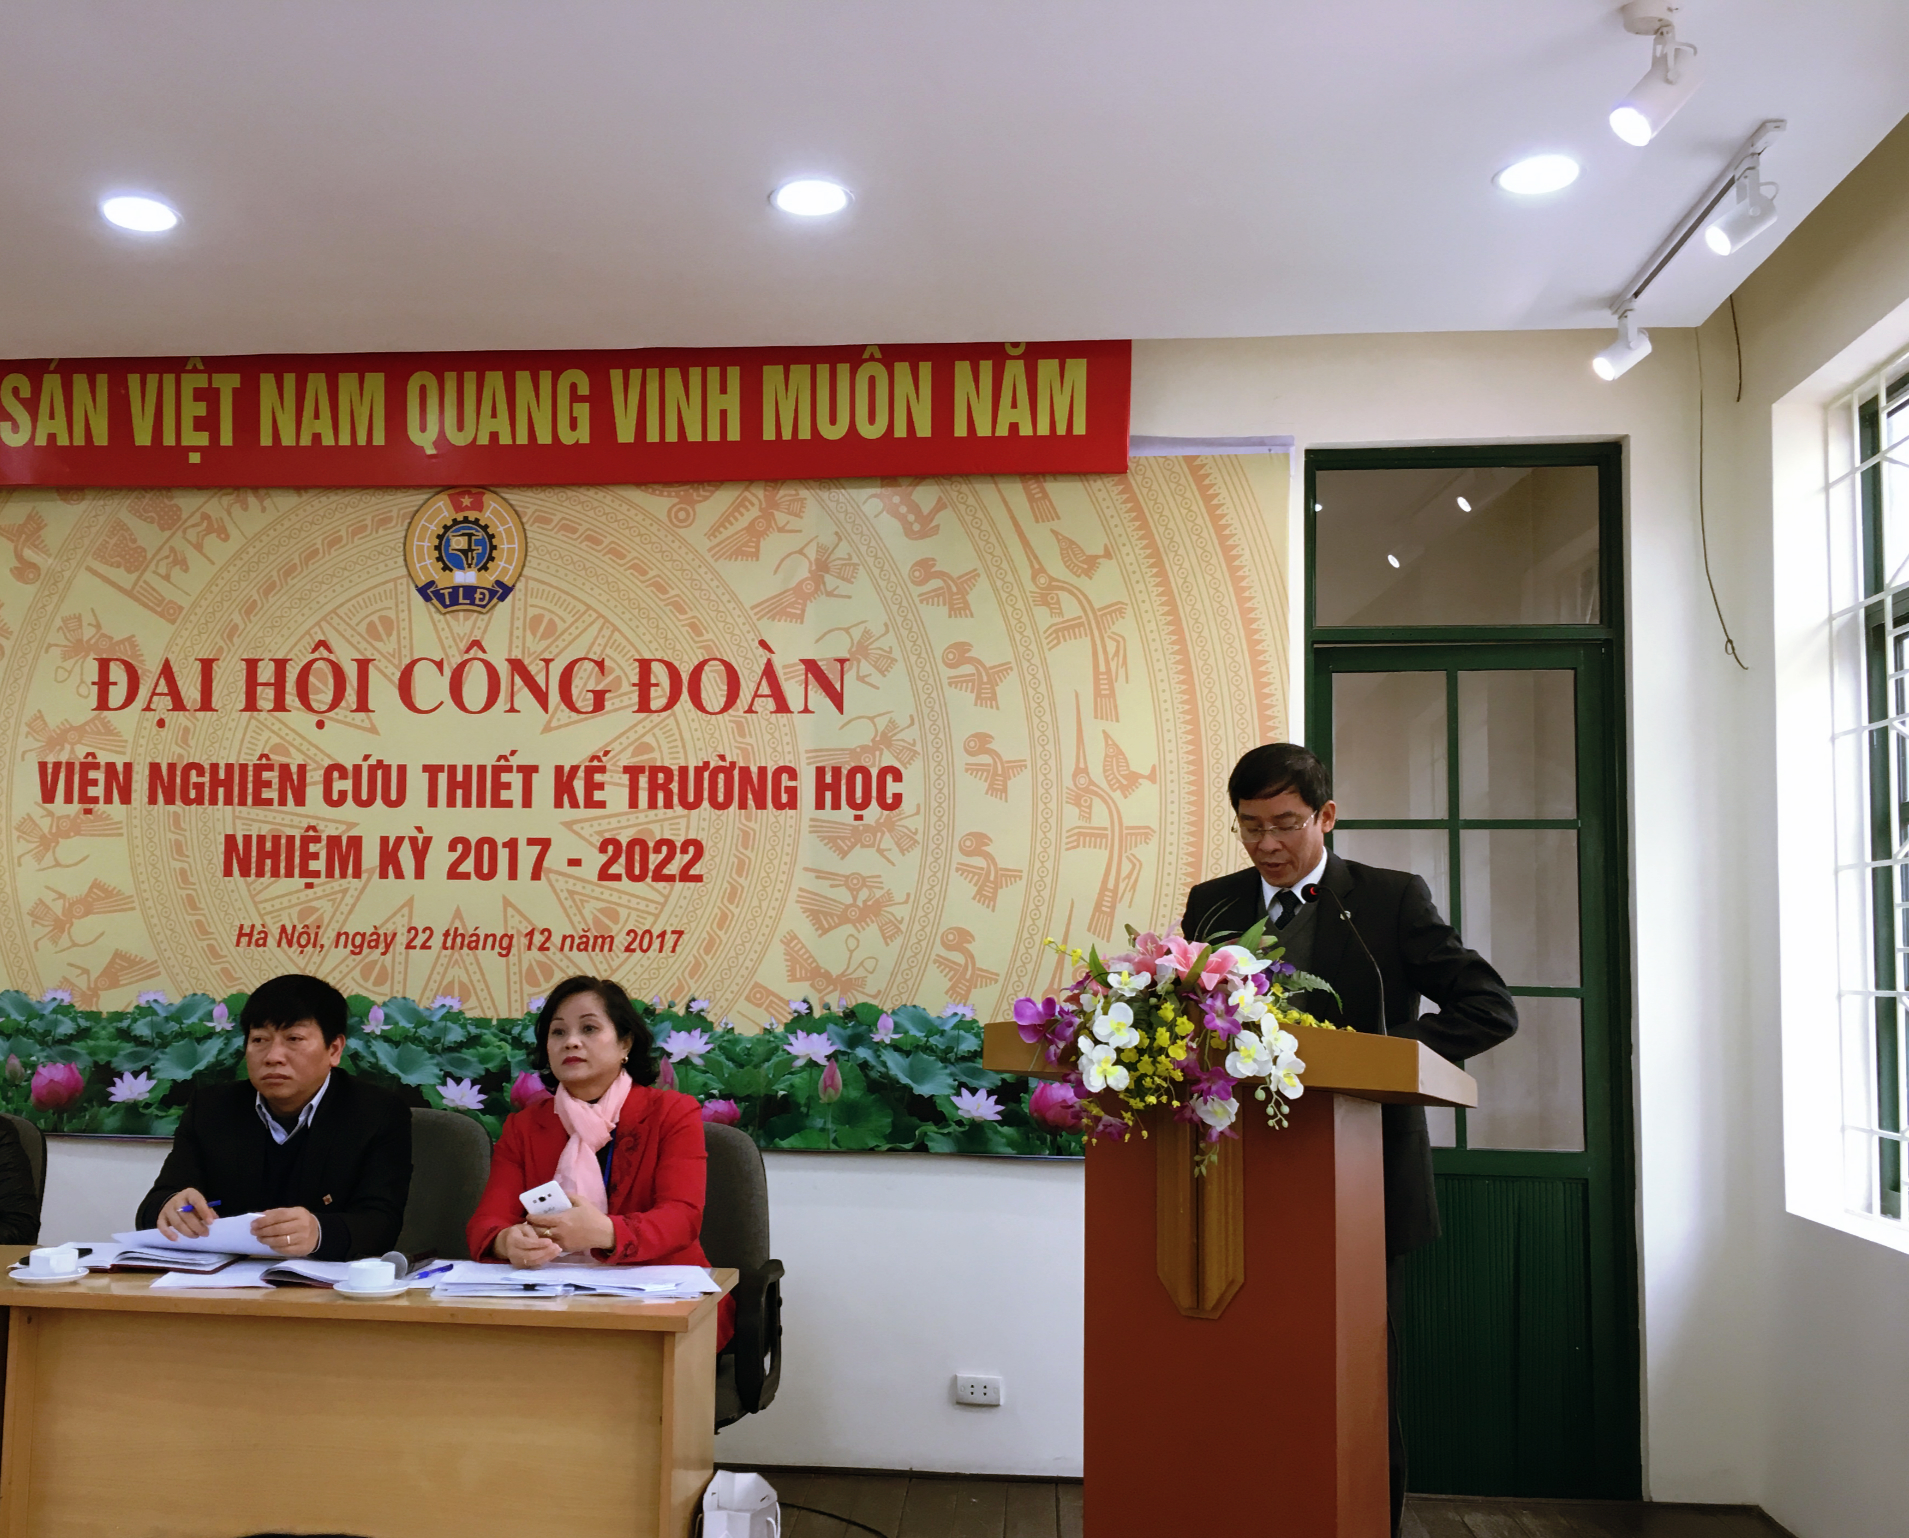 Đại hội tiếp thu ý kiến đóng góp, chỉ đạo của đồng chí Vũ Minh Đức –  chủ tịch Công đoàn Giáo dục Việt nam